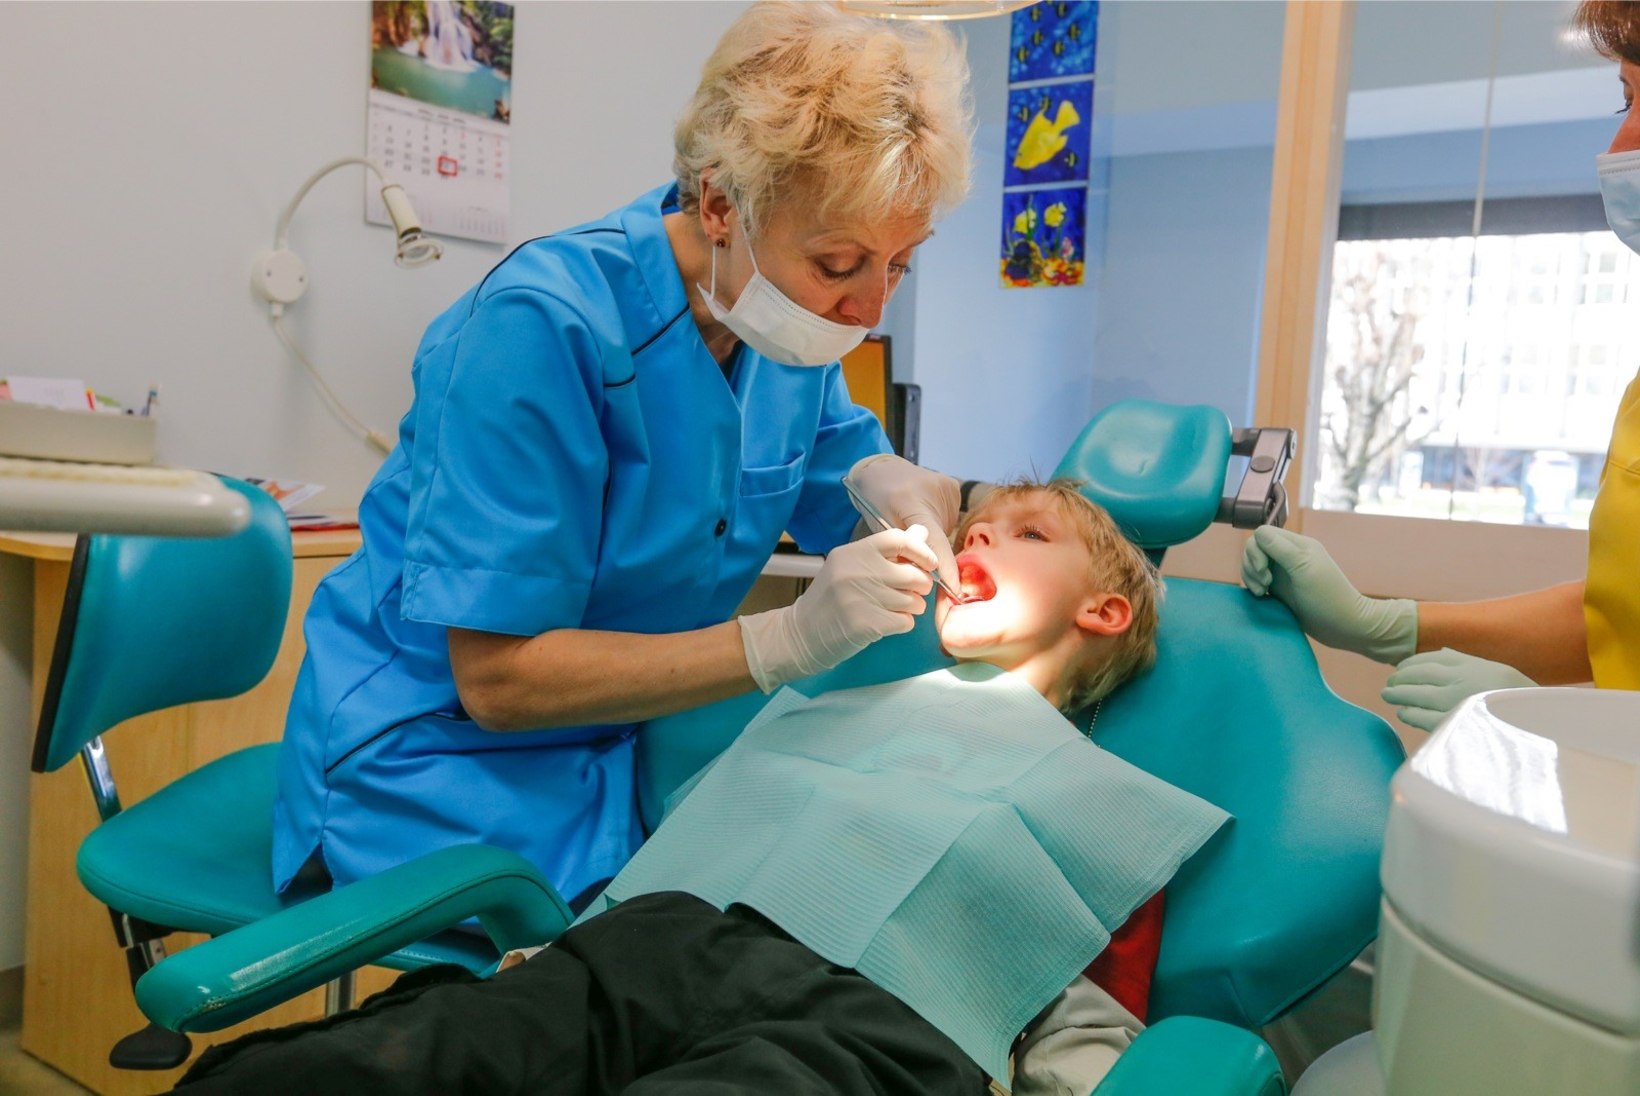 Kas laste hambaravi on ikka tasuta ja kes selle siis peab kinni maksma?